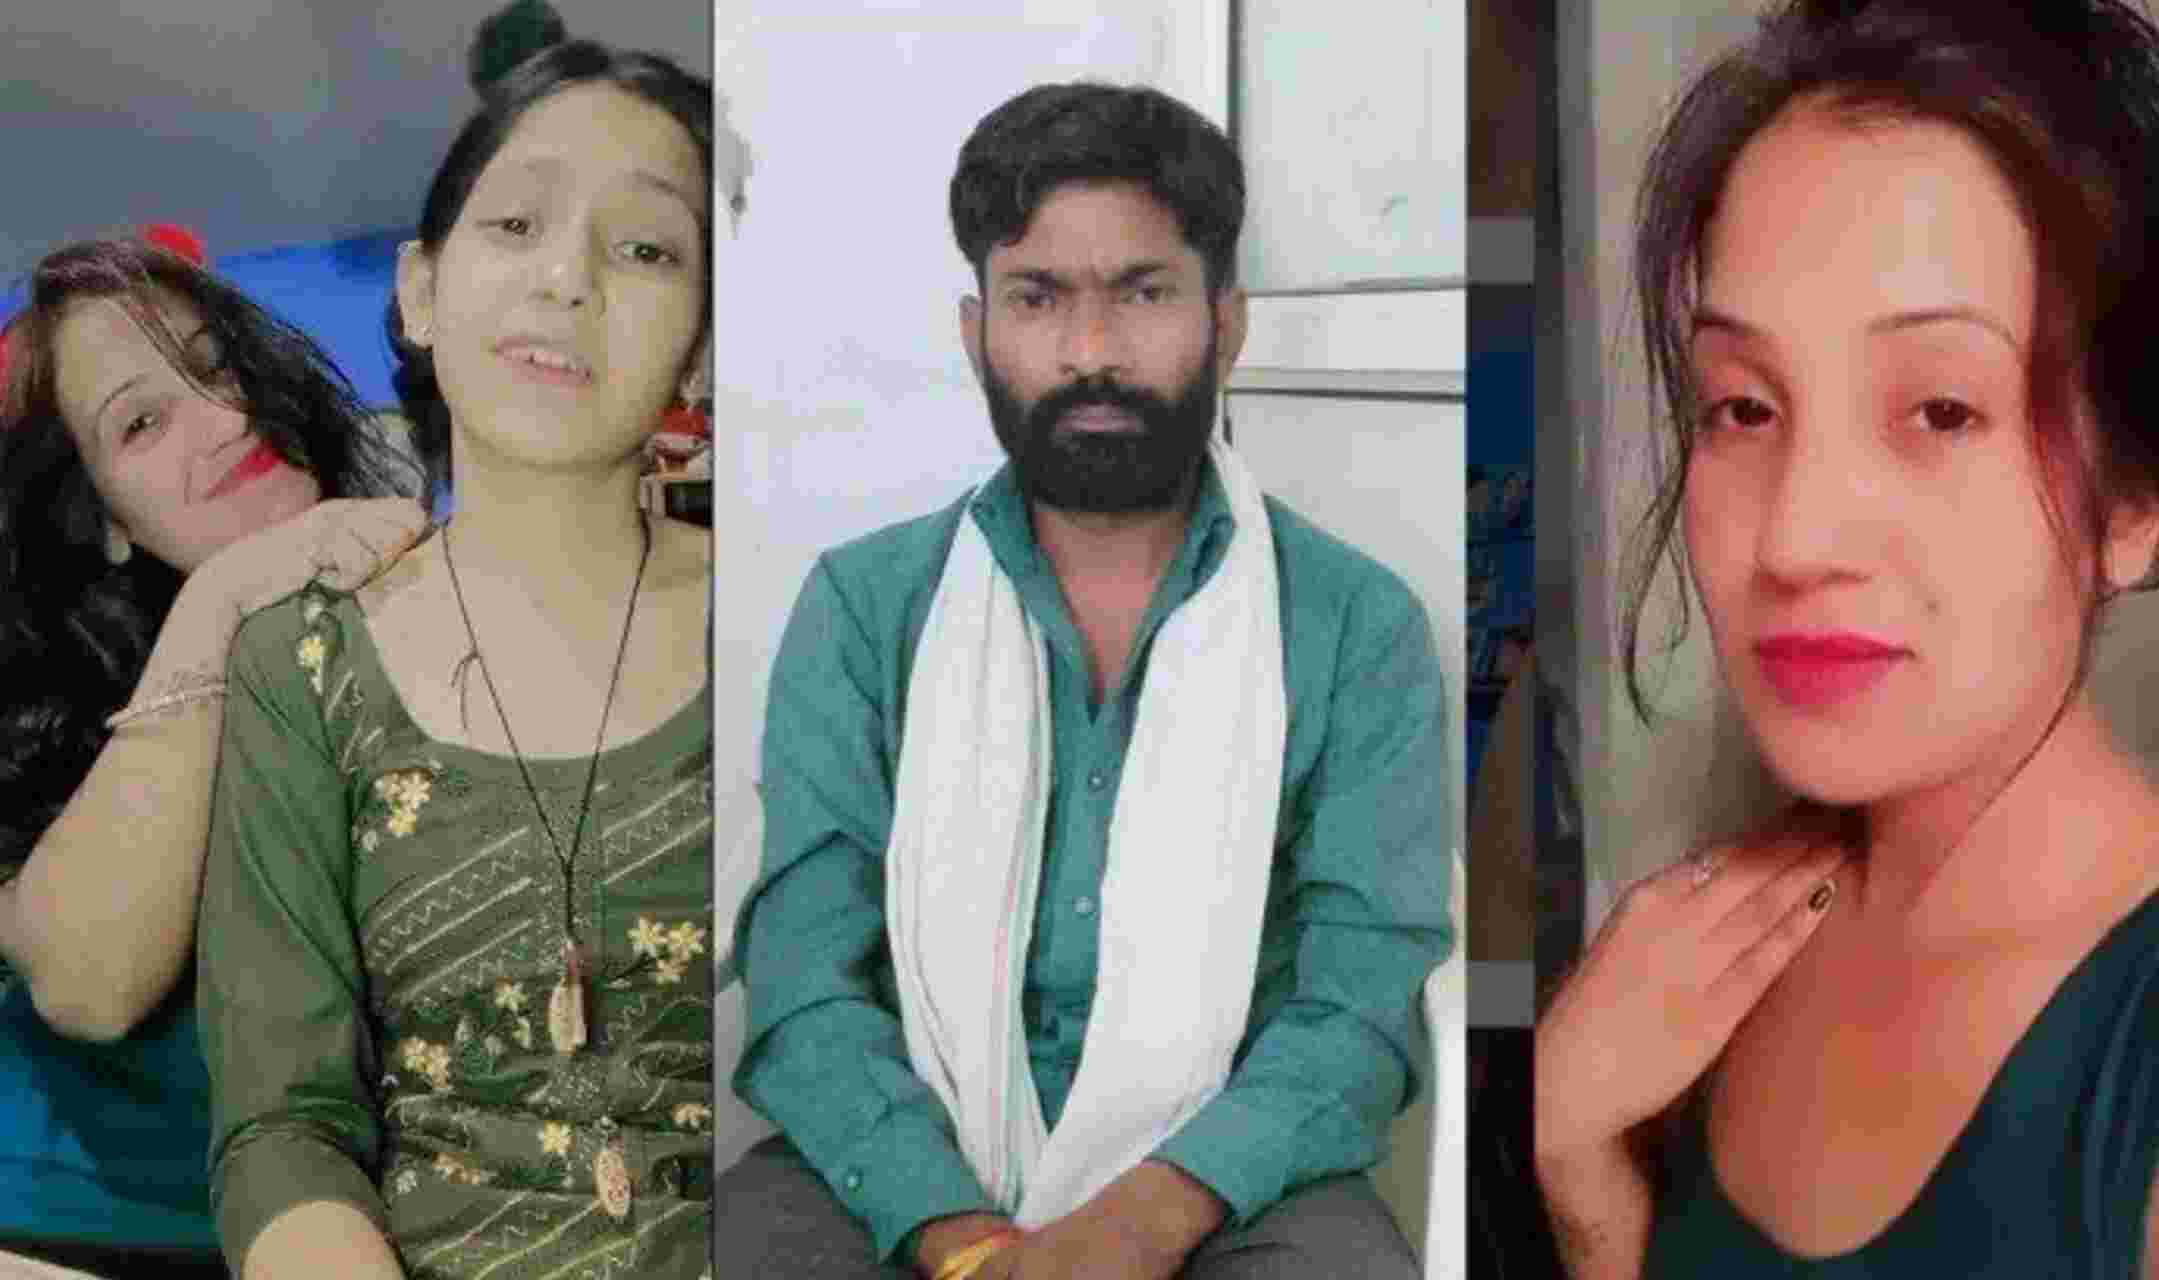 Ghaziabad News : पत्नी और बेटी के ग्लैमरस लुक से परेशान रिक्शा चालक पिता ने दोनो को दी मौत, इंस्टाग्राम पर बेटी थी एक्टिव